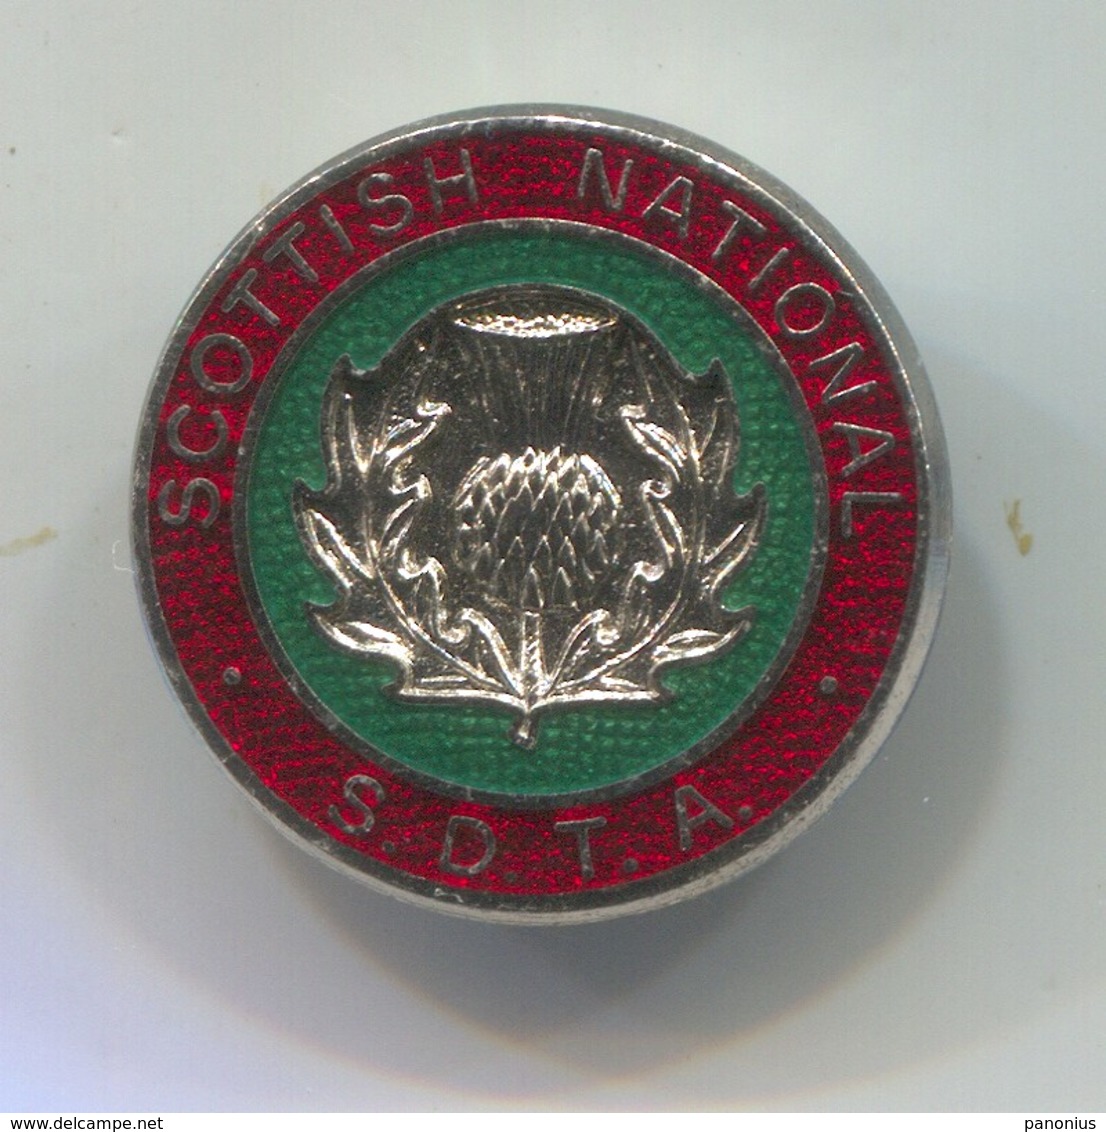 SDTA - Scottish National Dances, Vintage Pin, Badge, Abzeichen, Enamel - Musique